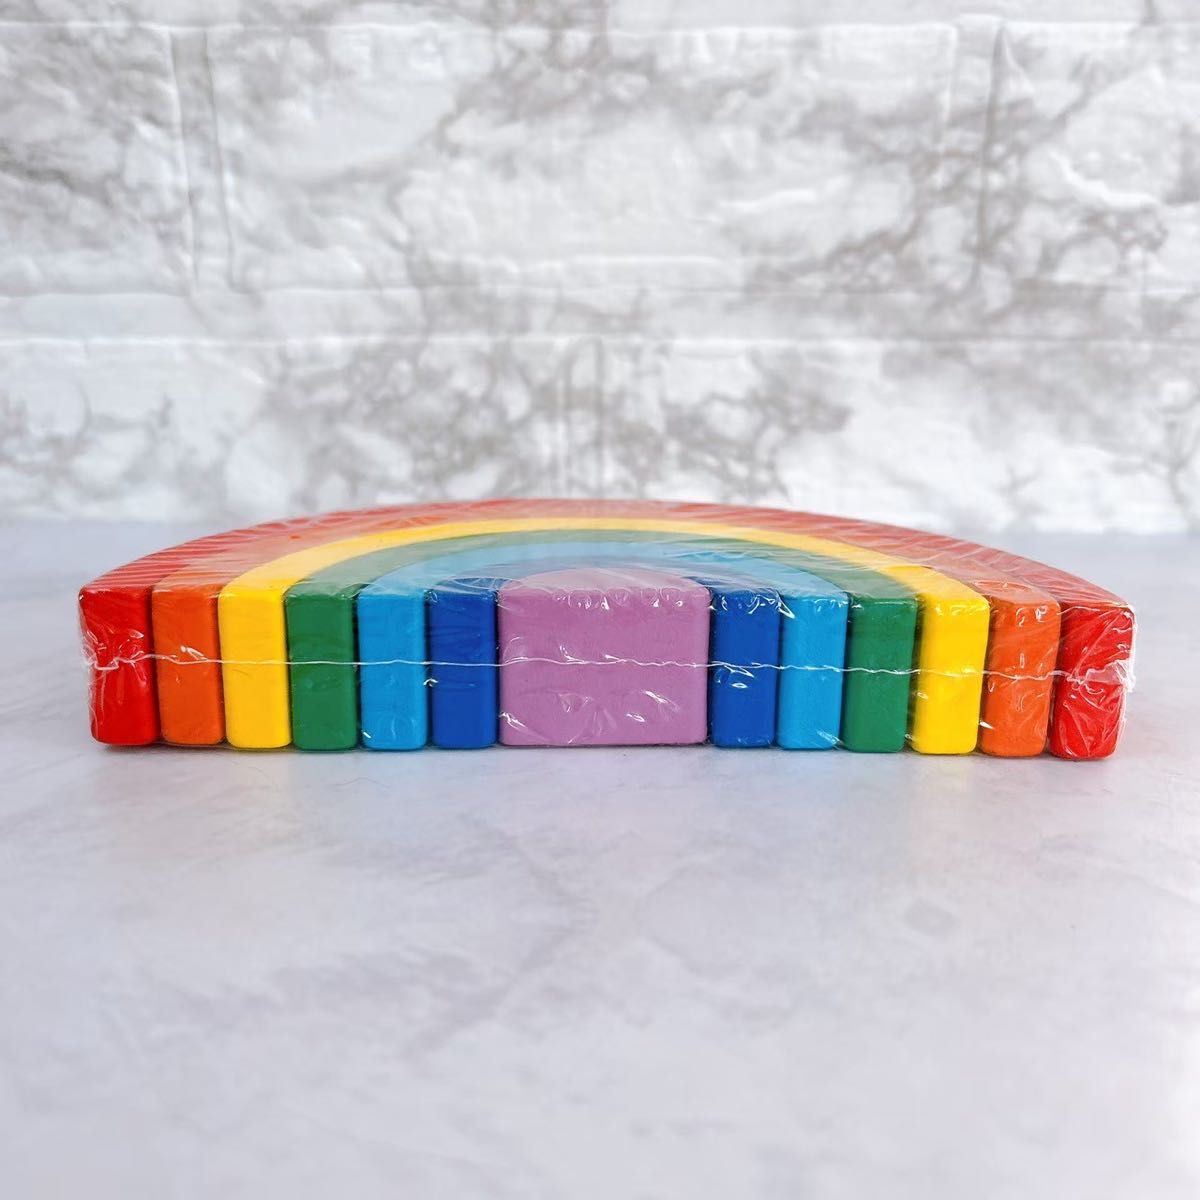 木製 虹 積み重ね 積み木 おもちゃ アーチ橋 虹 ブロック インテリア 知育